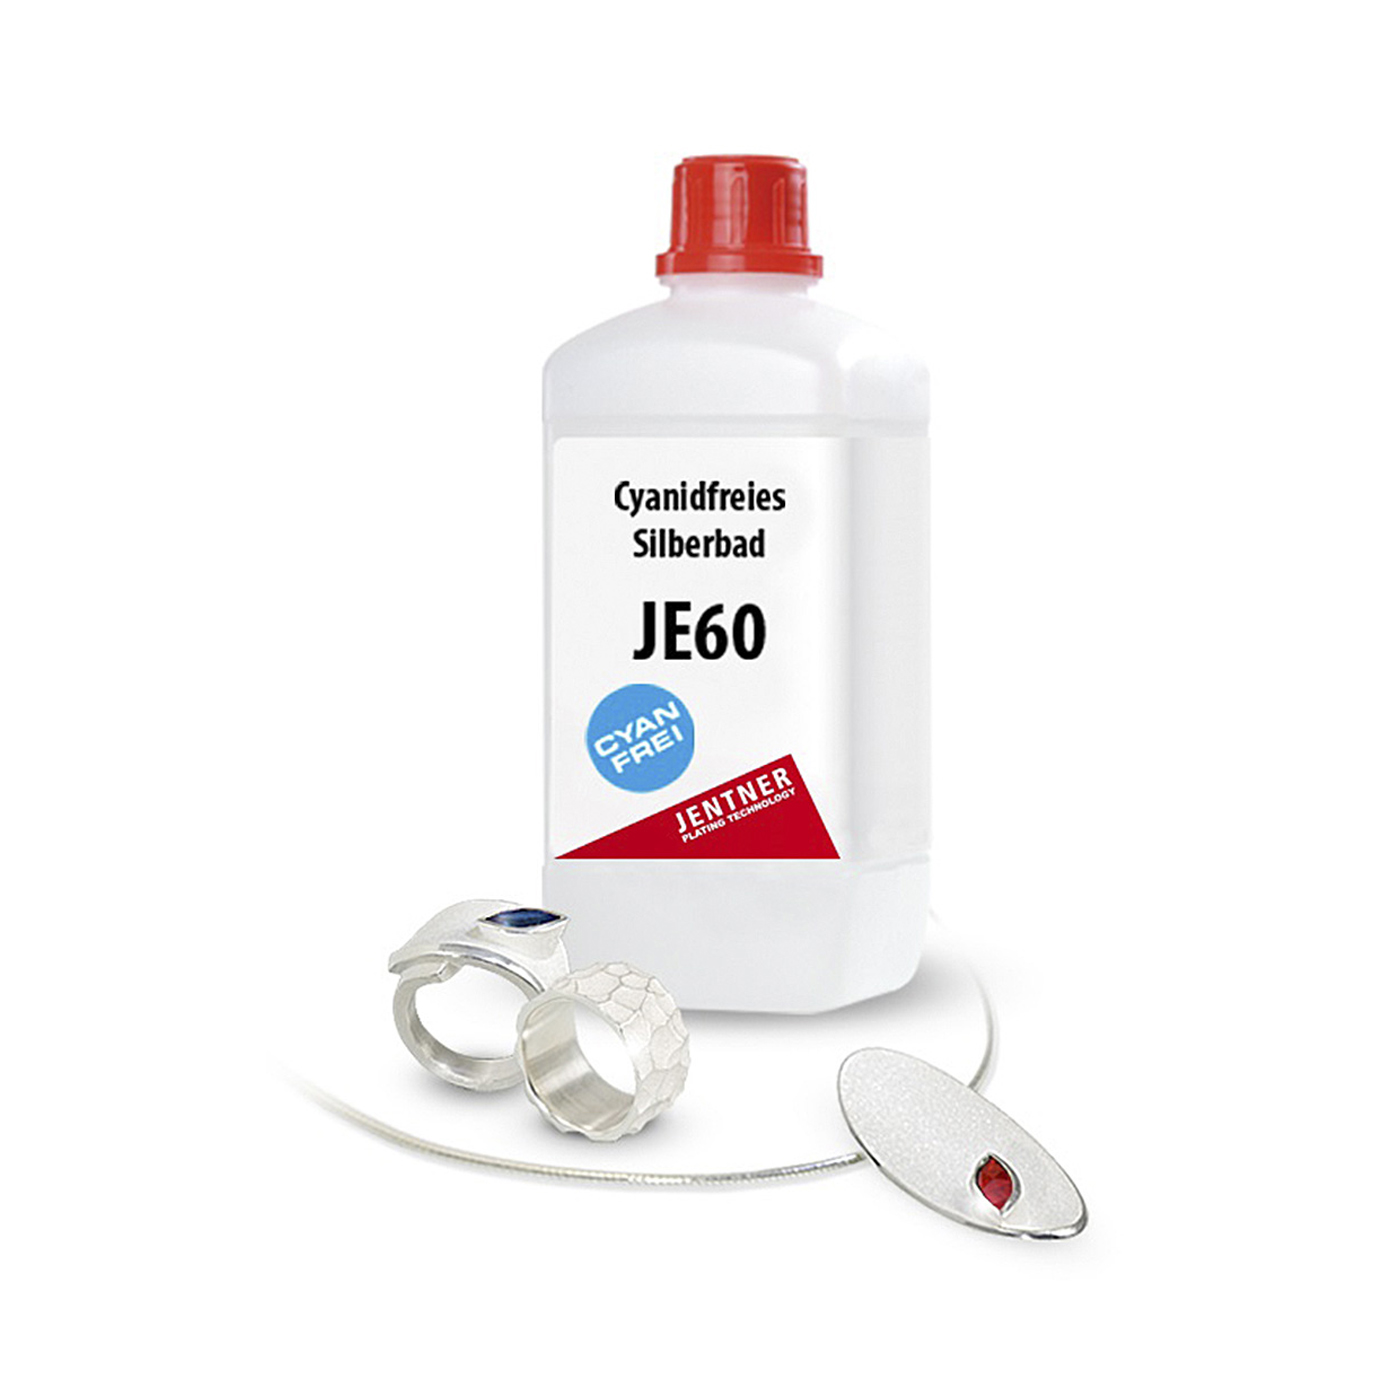 JE60 Silver Bath - 1000 ml